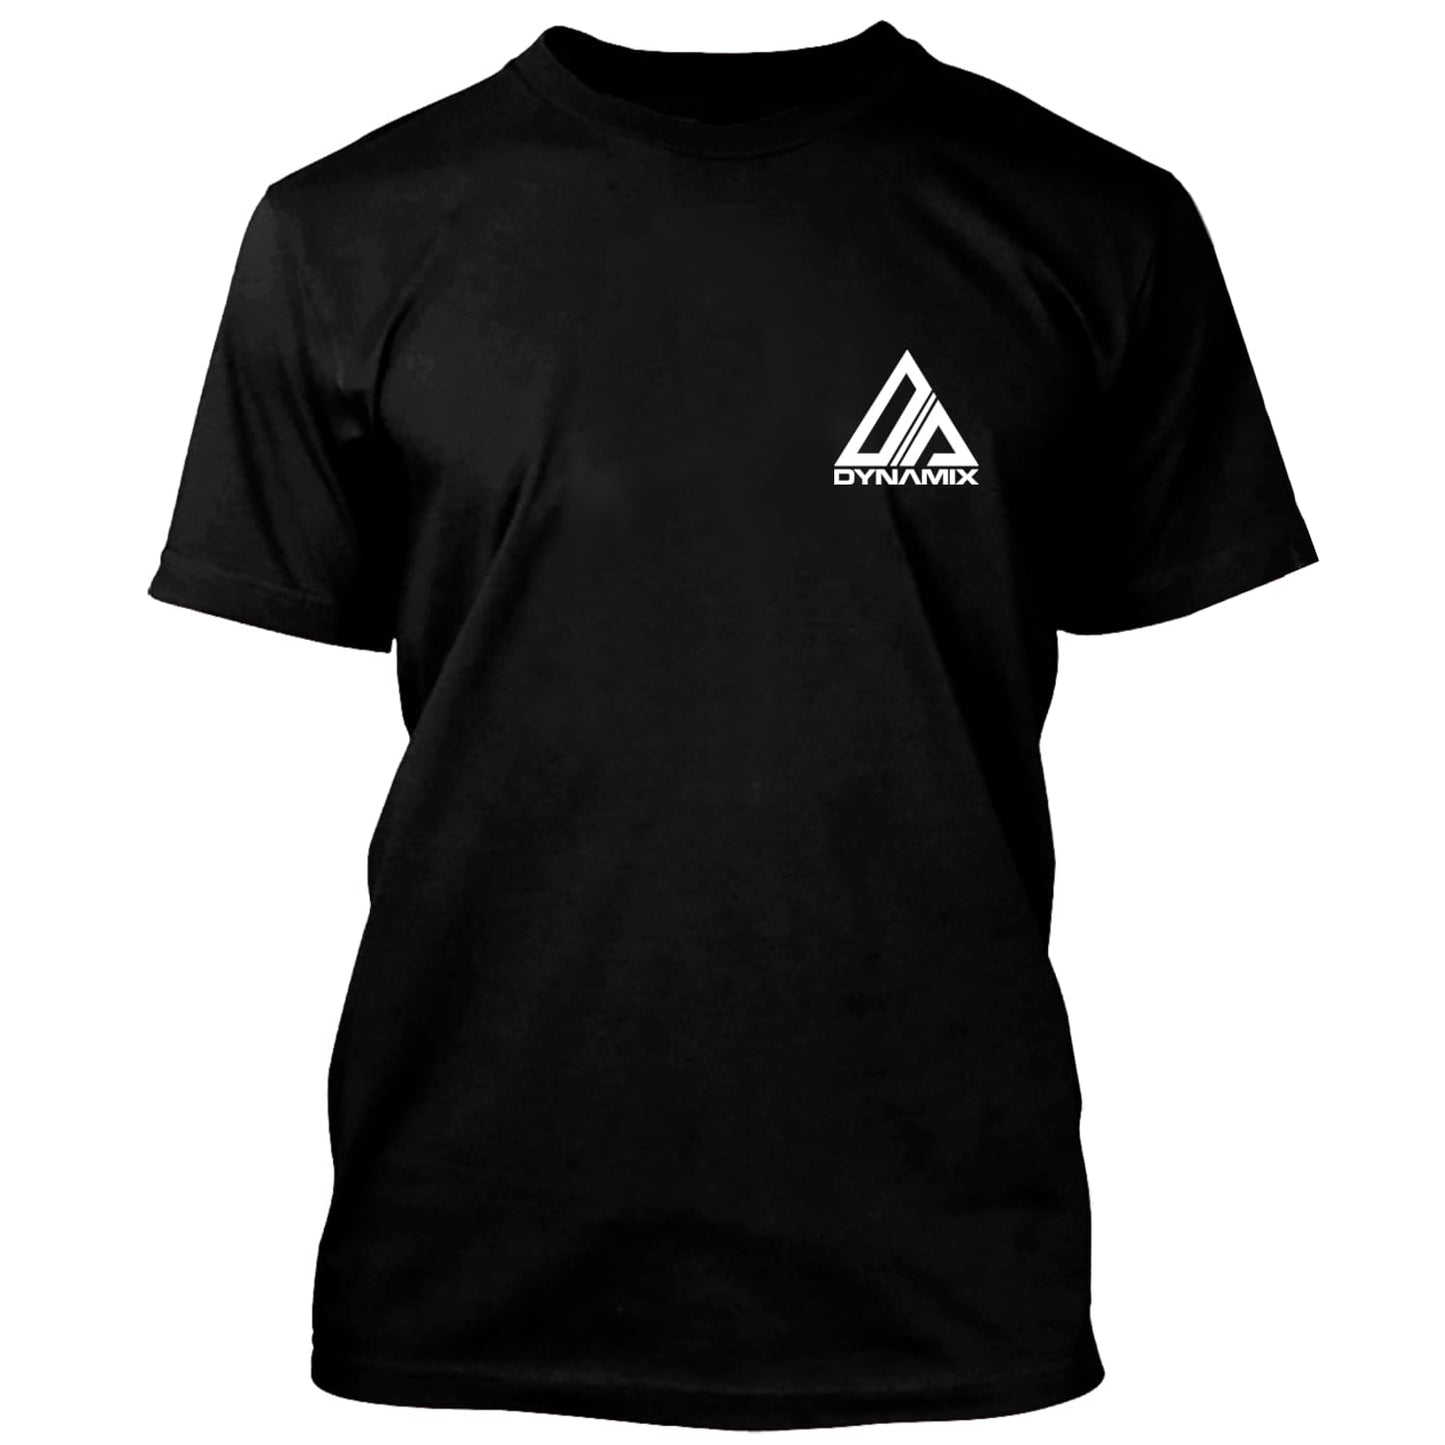 Dynamix Athletics T-Shirt Krav Maga System - Schwarz